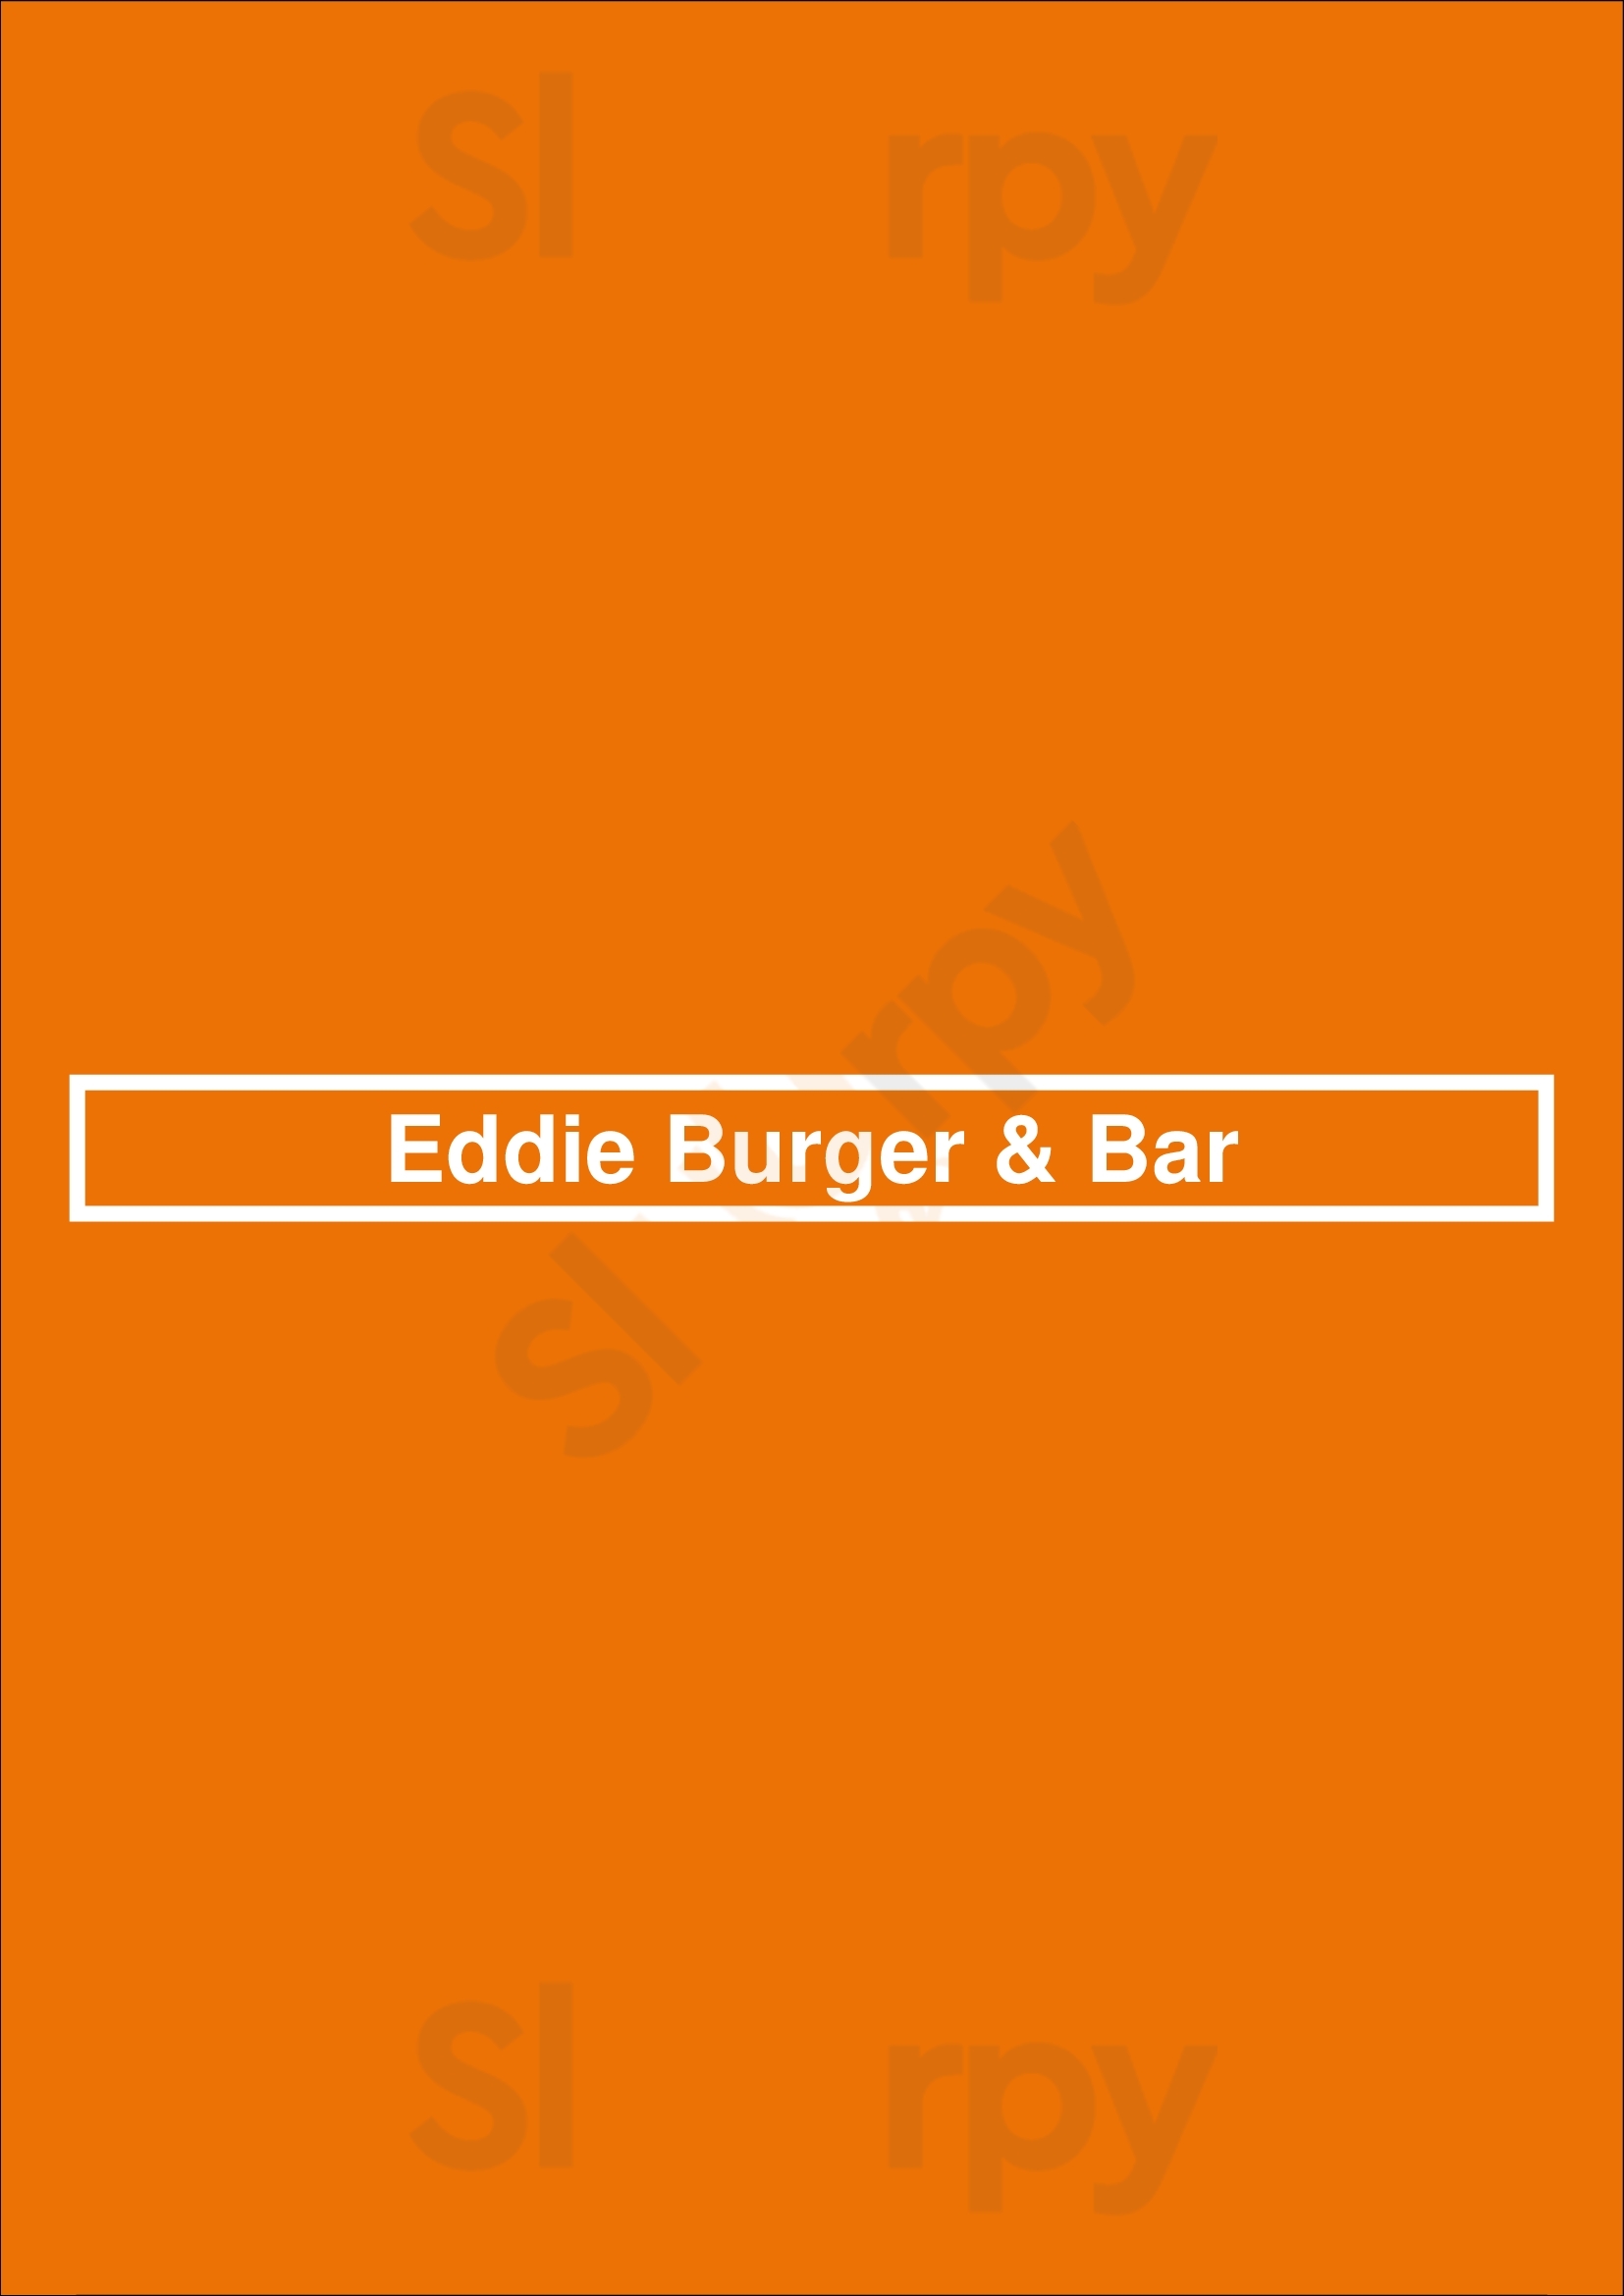 Eddie Burger & Bar Banff Menu - 1